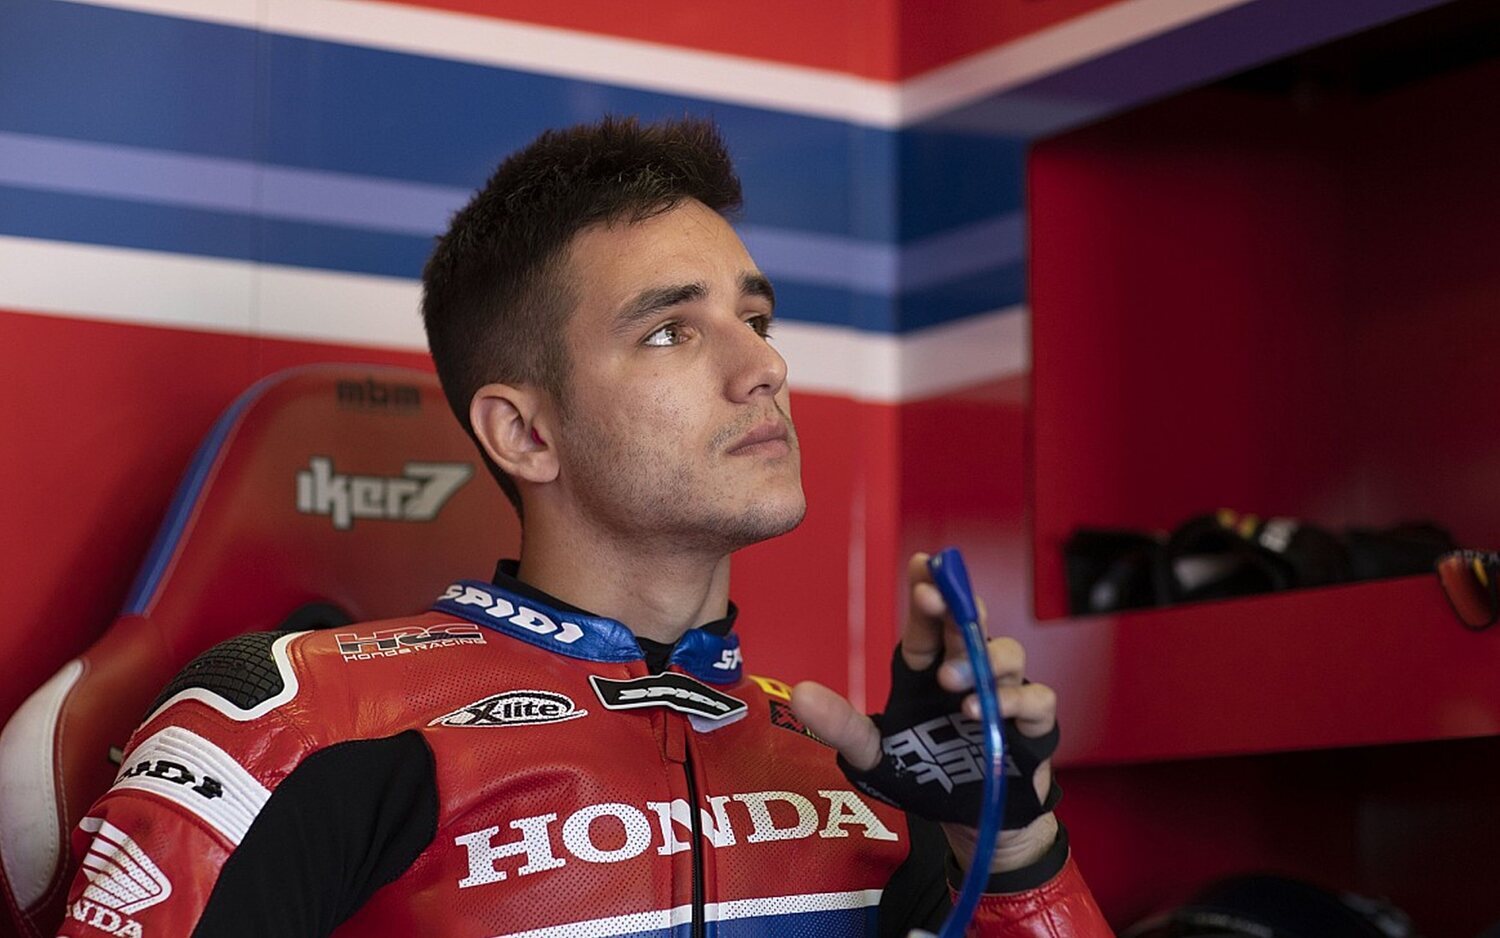 Lecuona vuelve a MotoGP en sustitución de Márquez